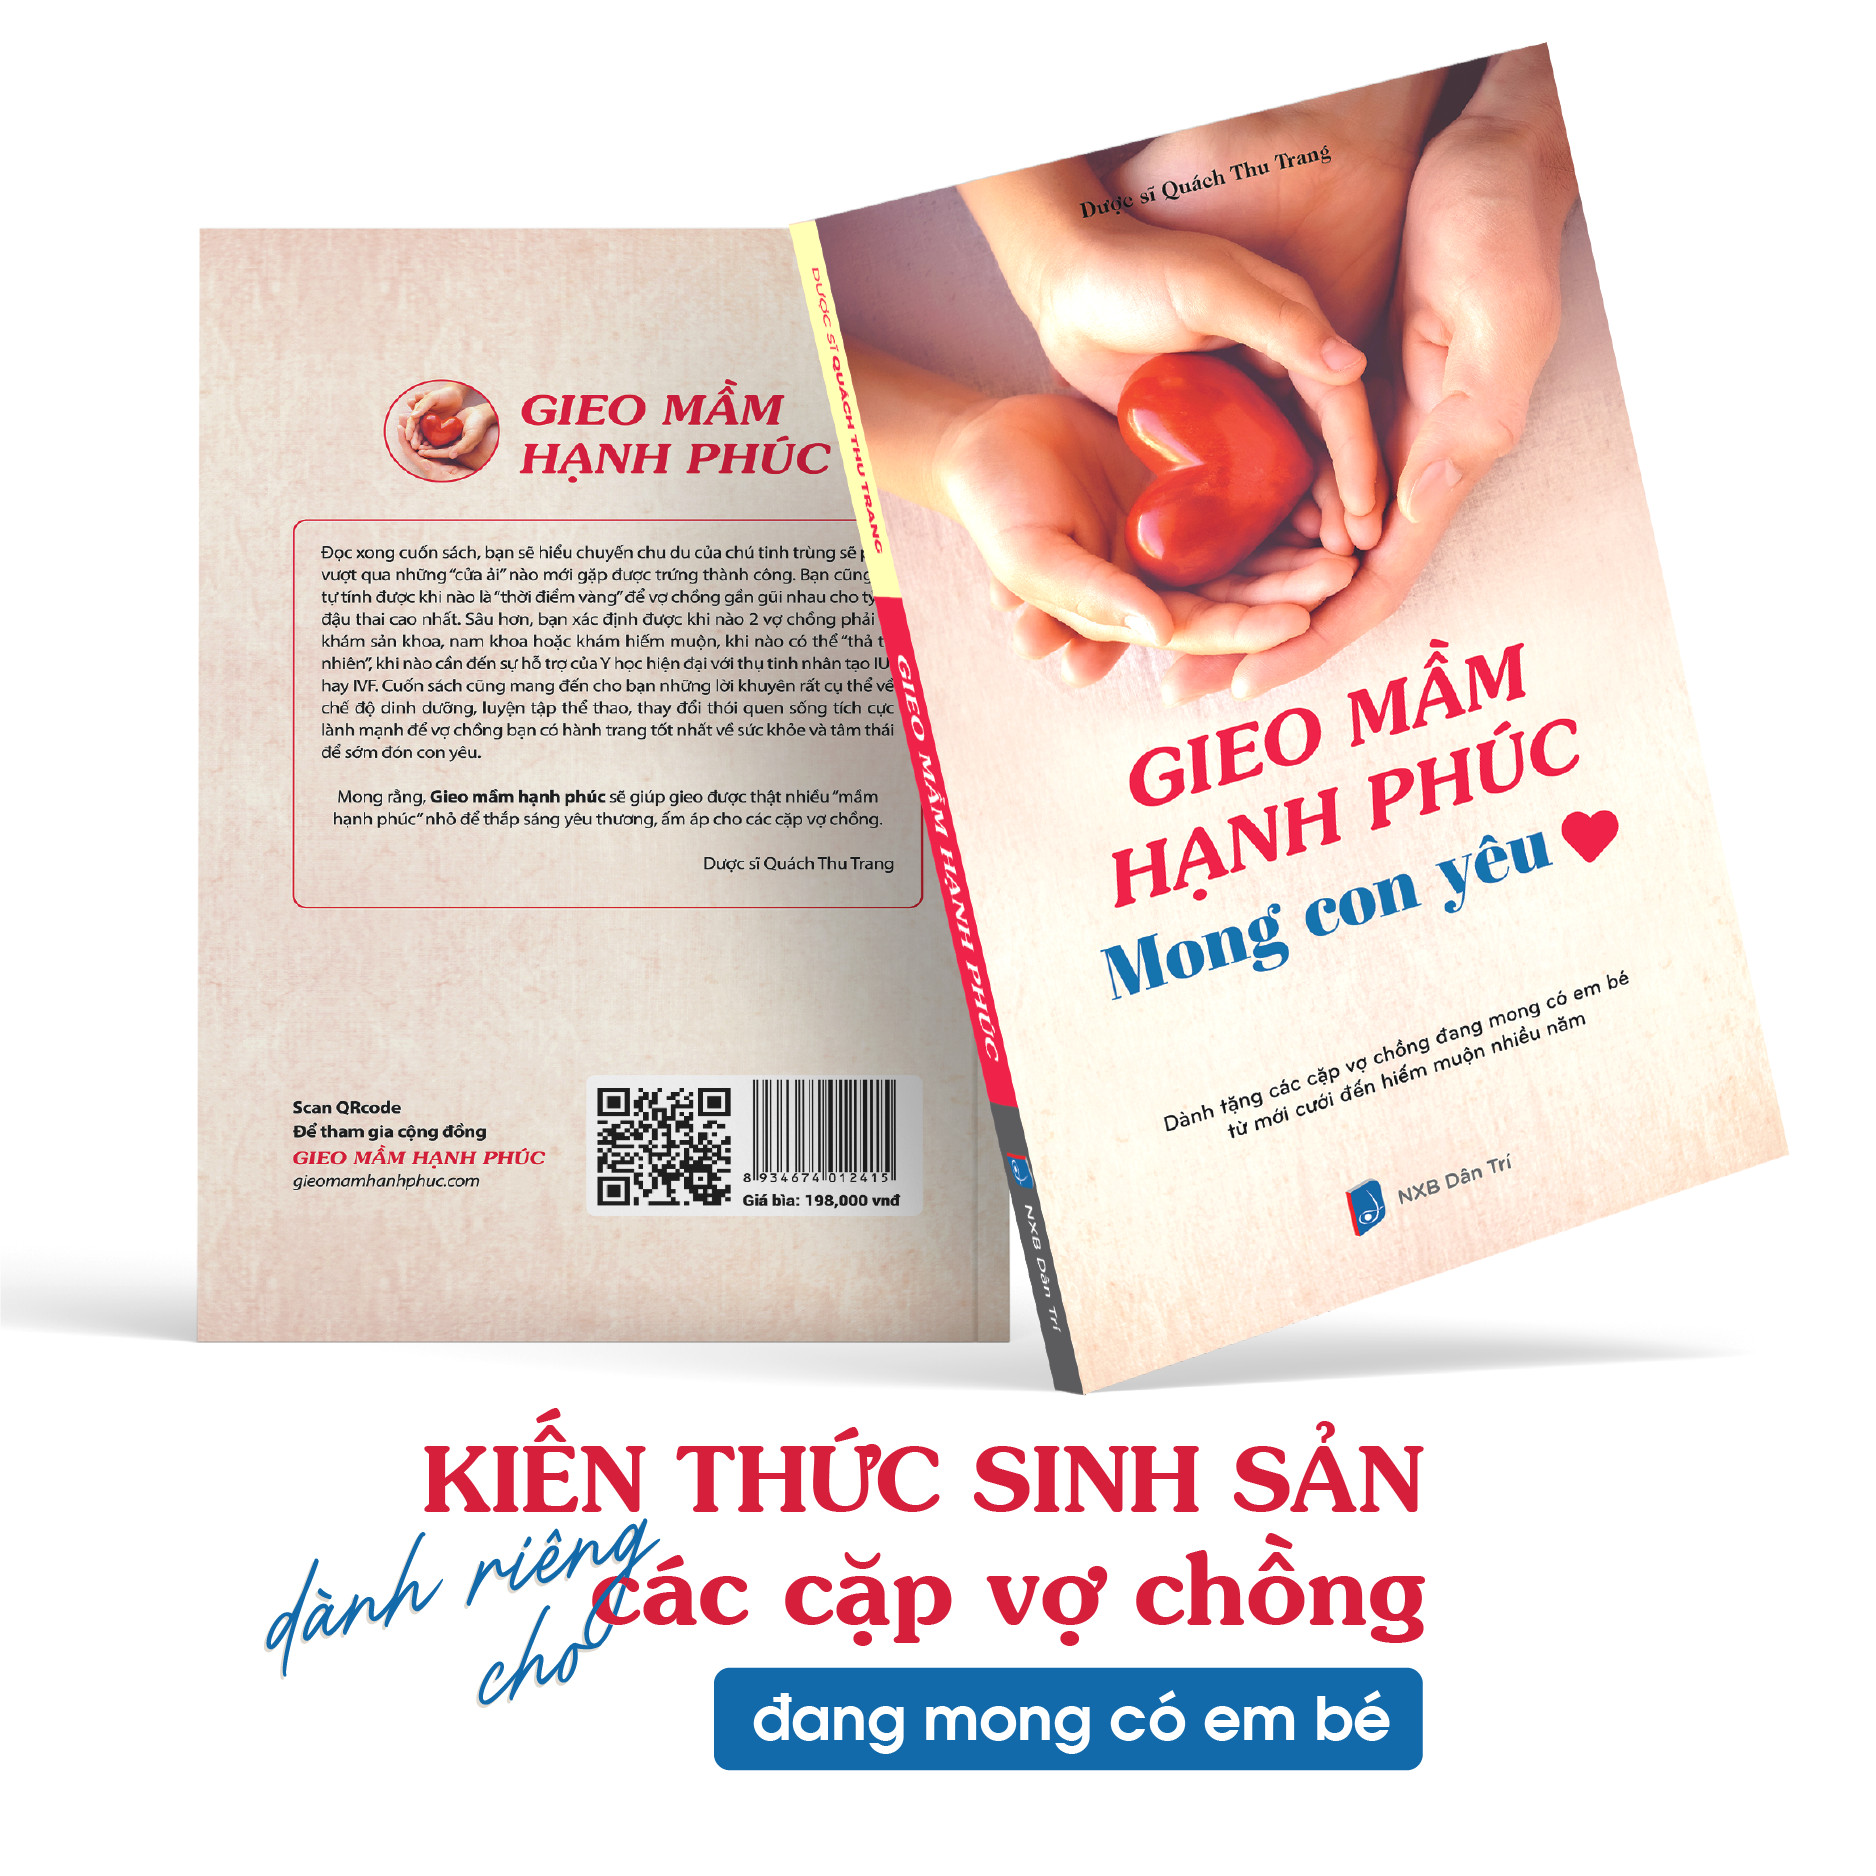 Sách Gieo mầm hạnh phúc Mong con yêu - Kiến thức sinh sản dành riêng cho các vợ chồng mong con